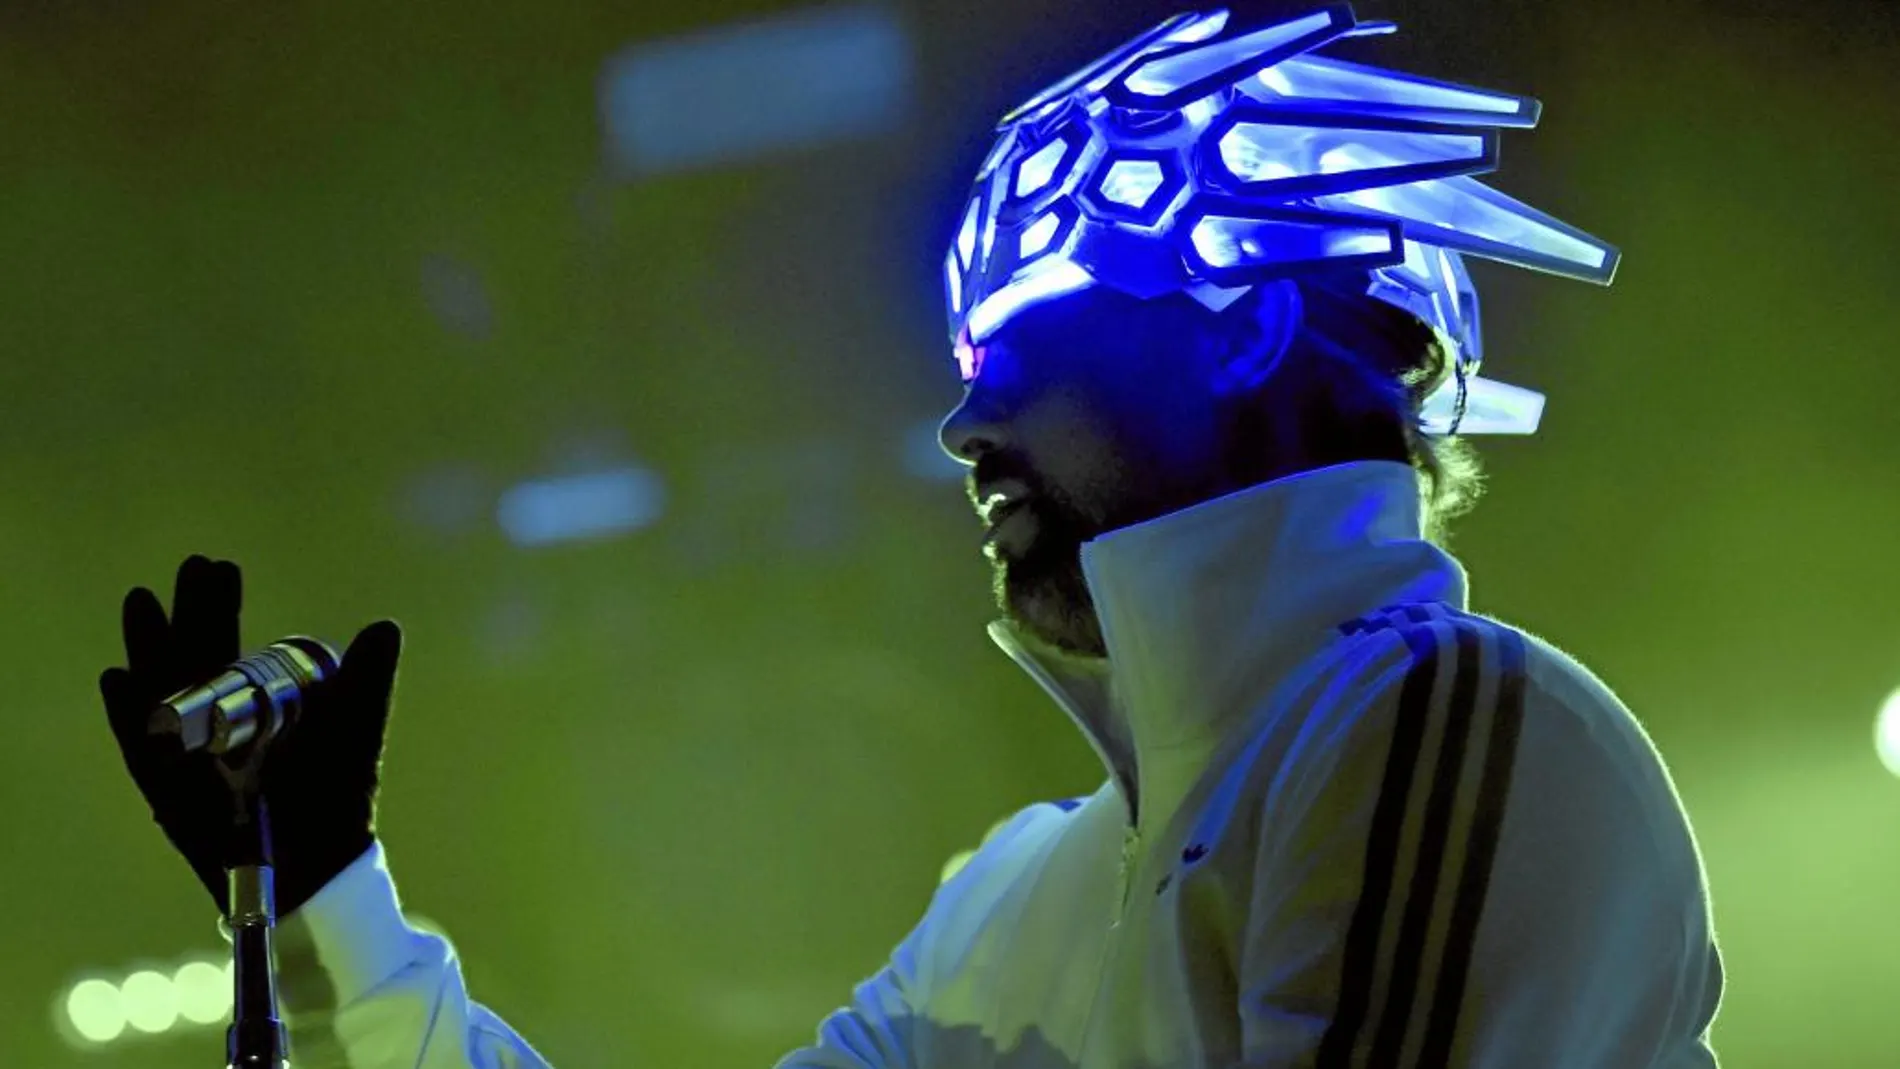 El cantante británico Jay kay, con su nuevo tocado futurista de inspiración animal